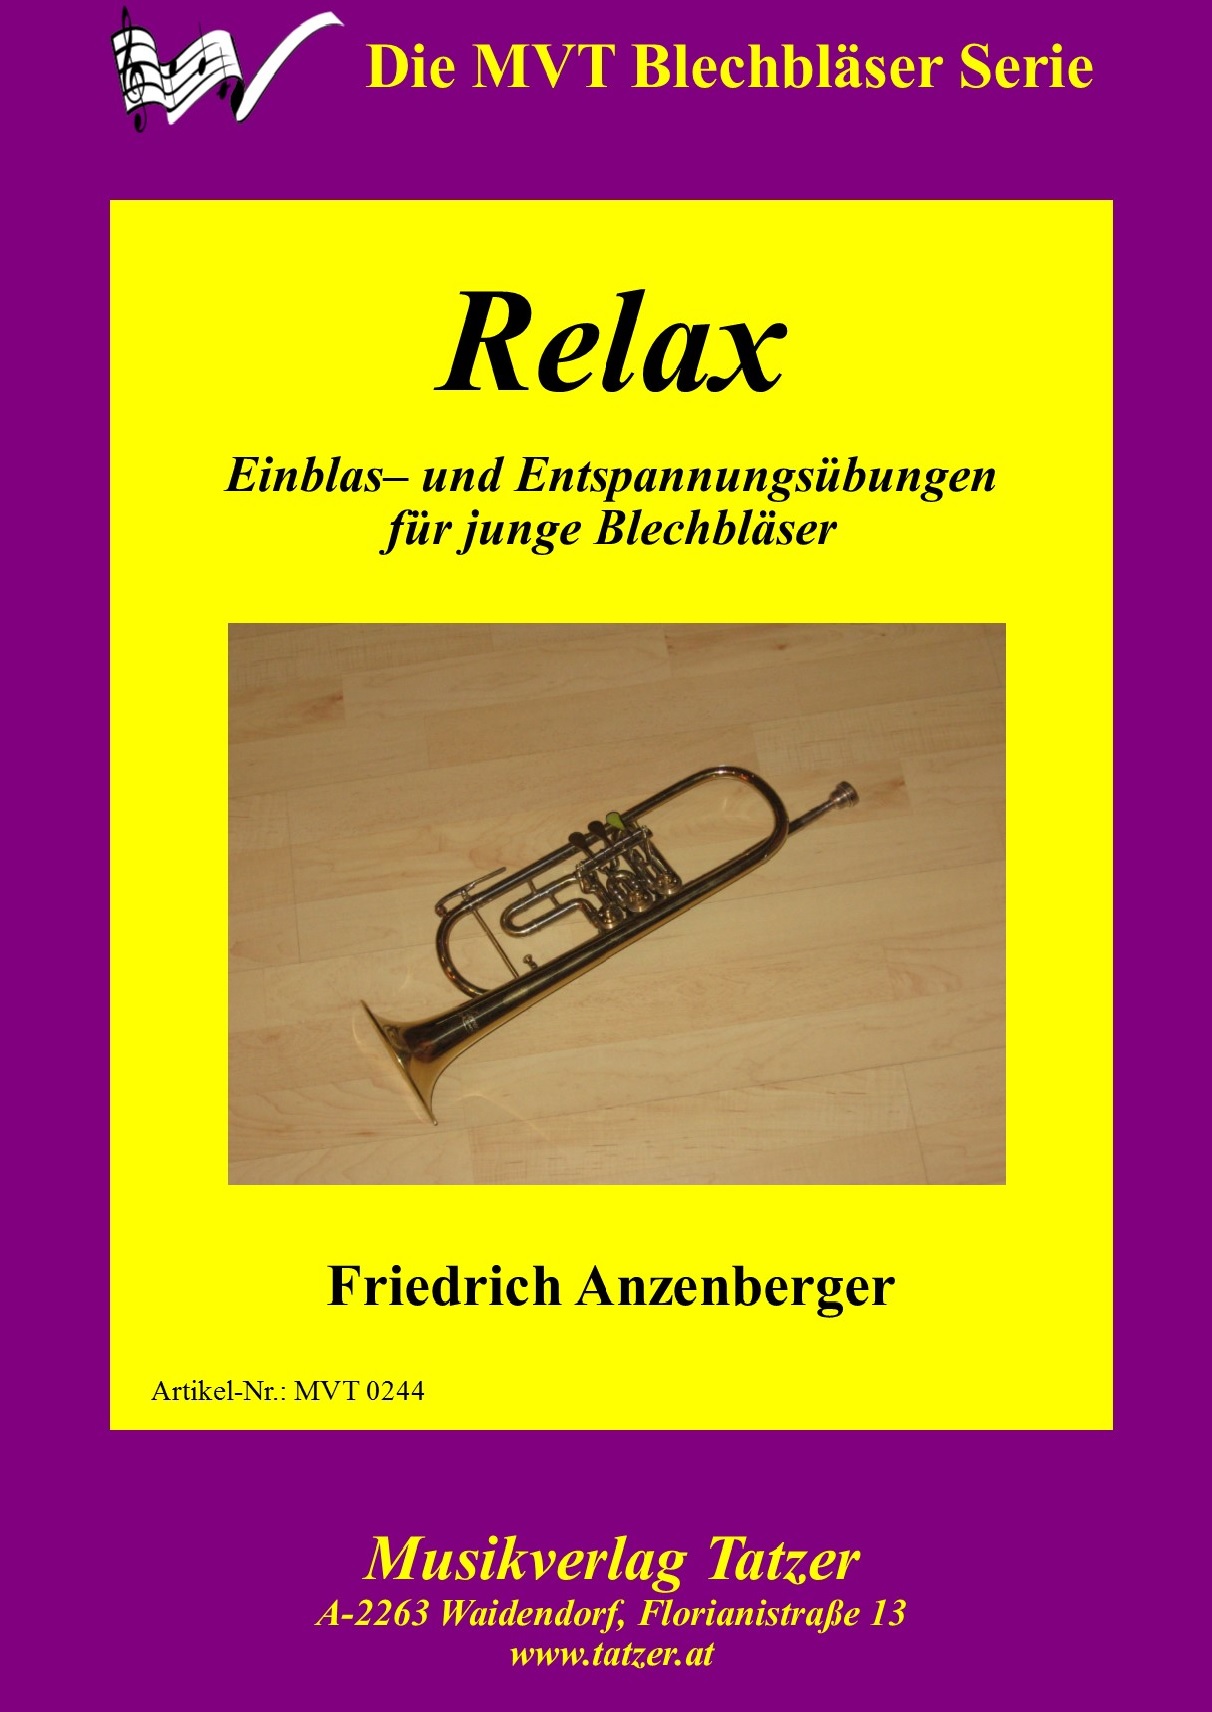 Relax, Friedrich Anzenberger